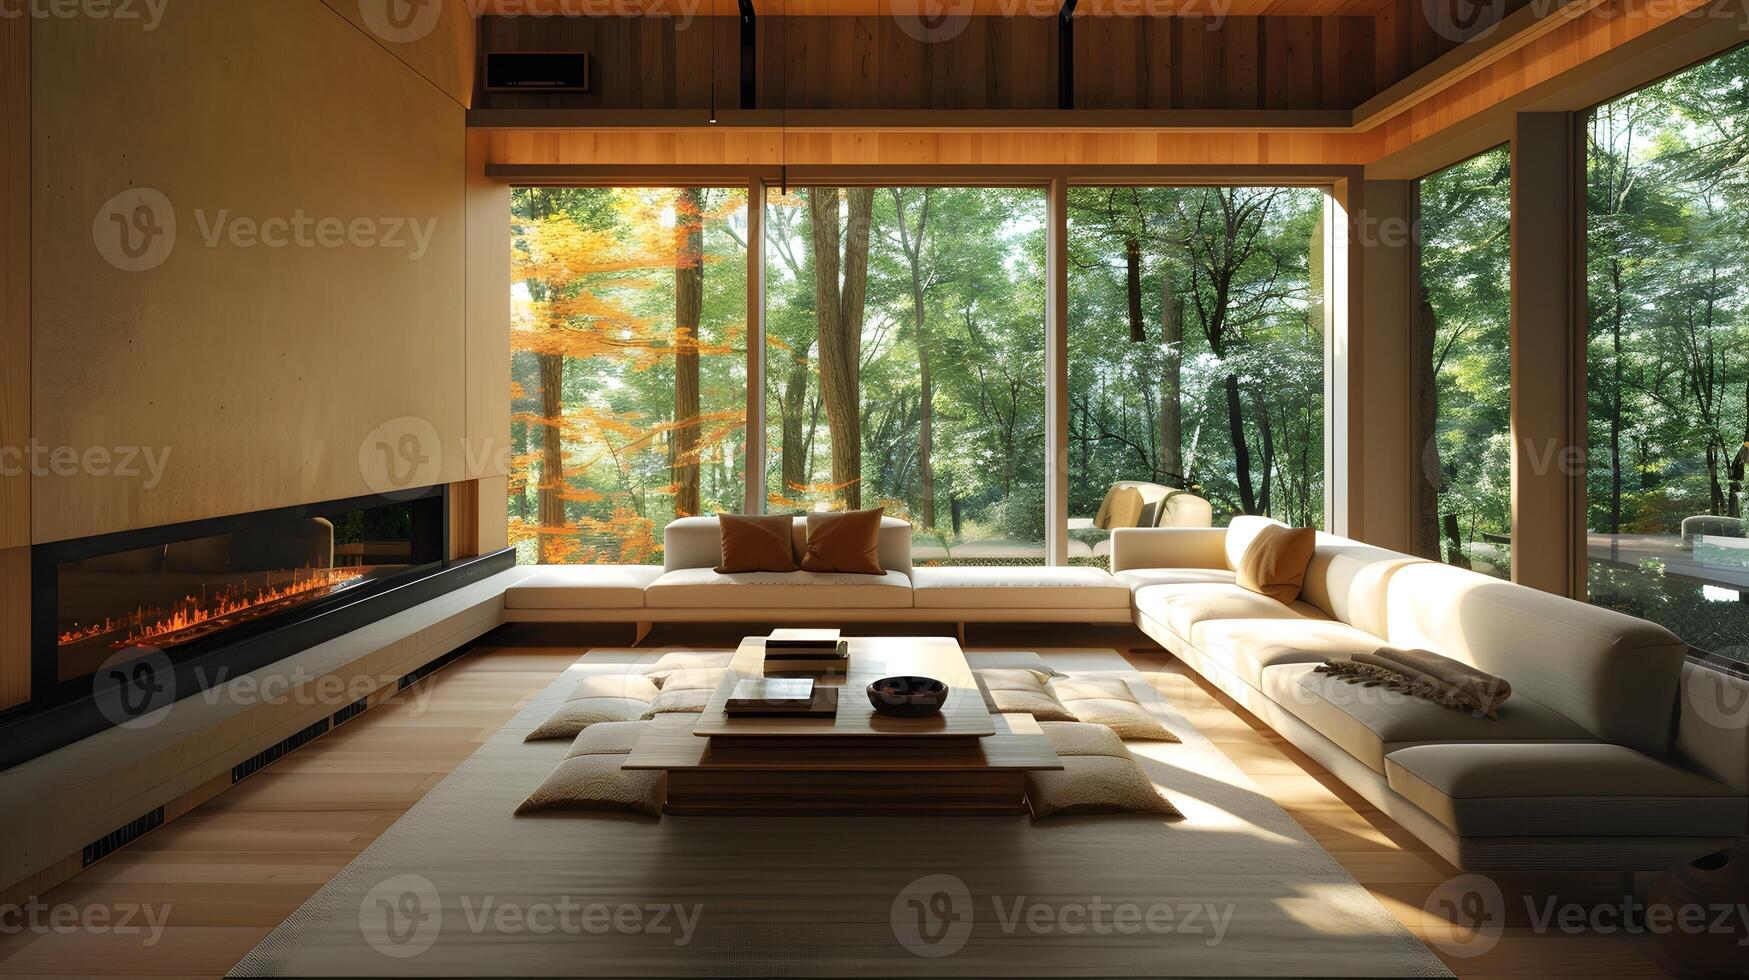 Herbst Gelassenheit ein japanisch Leben Zimmer umarmt durch Wald Ansichten und Wärme foto